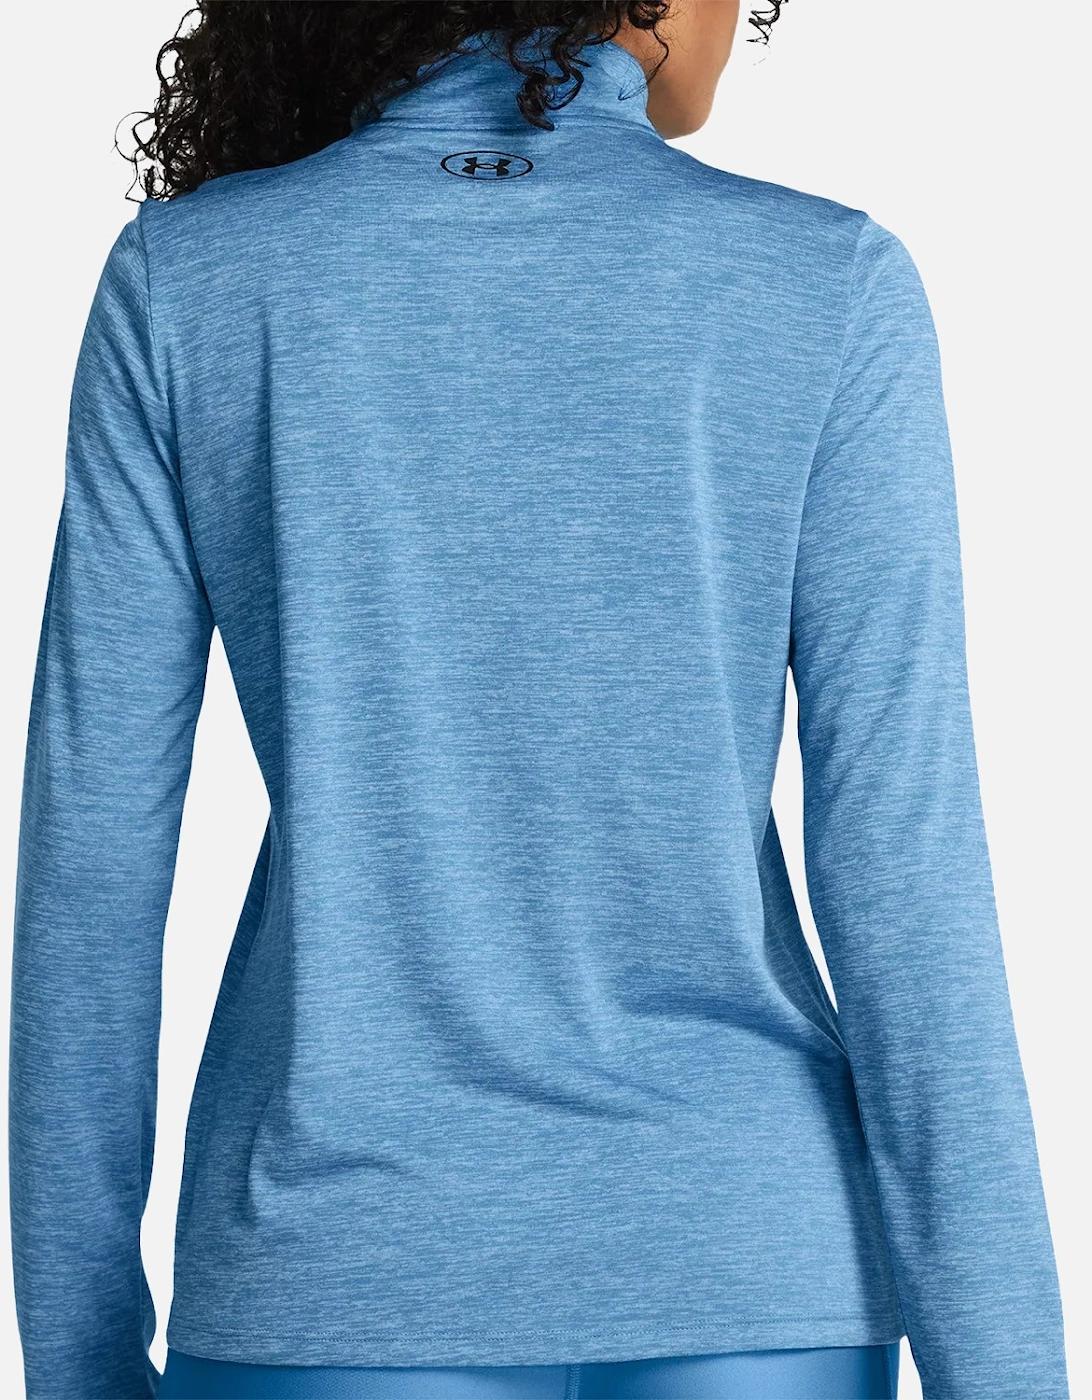 Womens Tech Twist 1/2 Zip Sweatshirt (Blue)